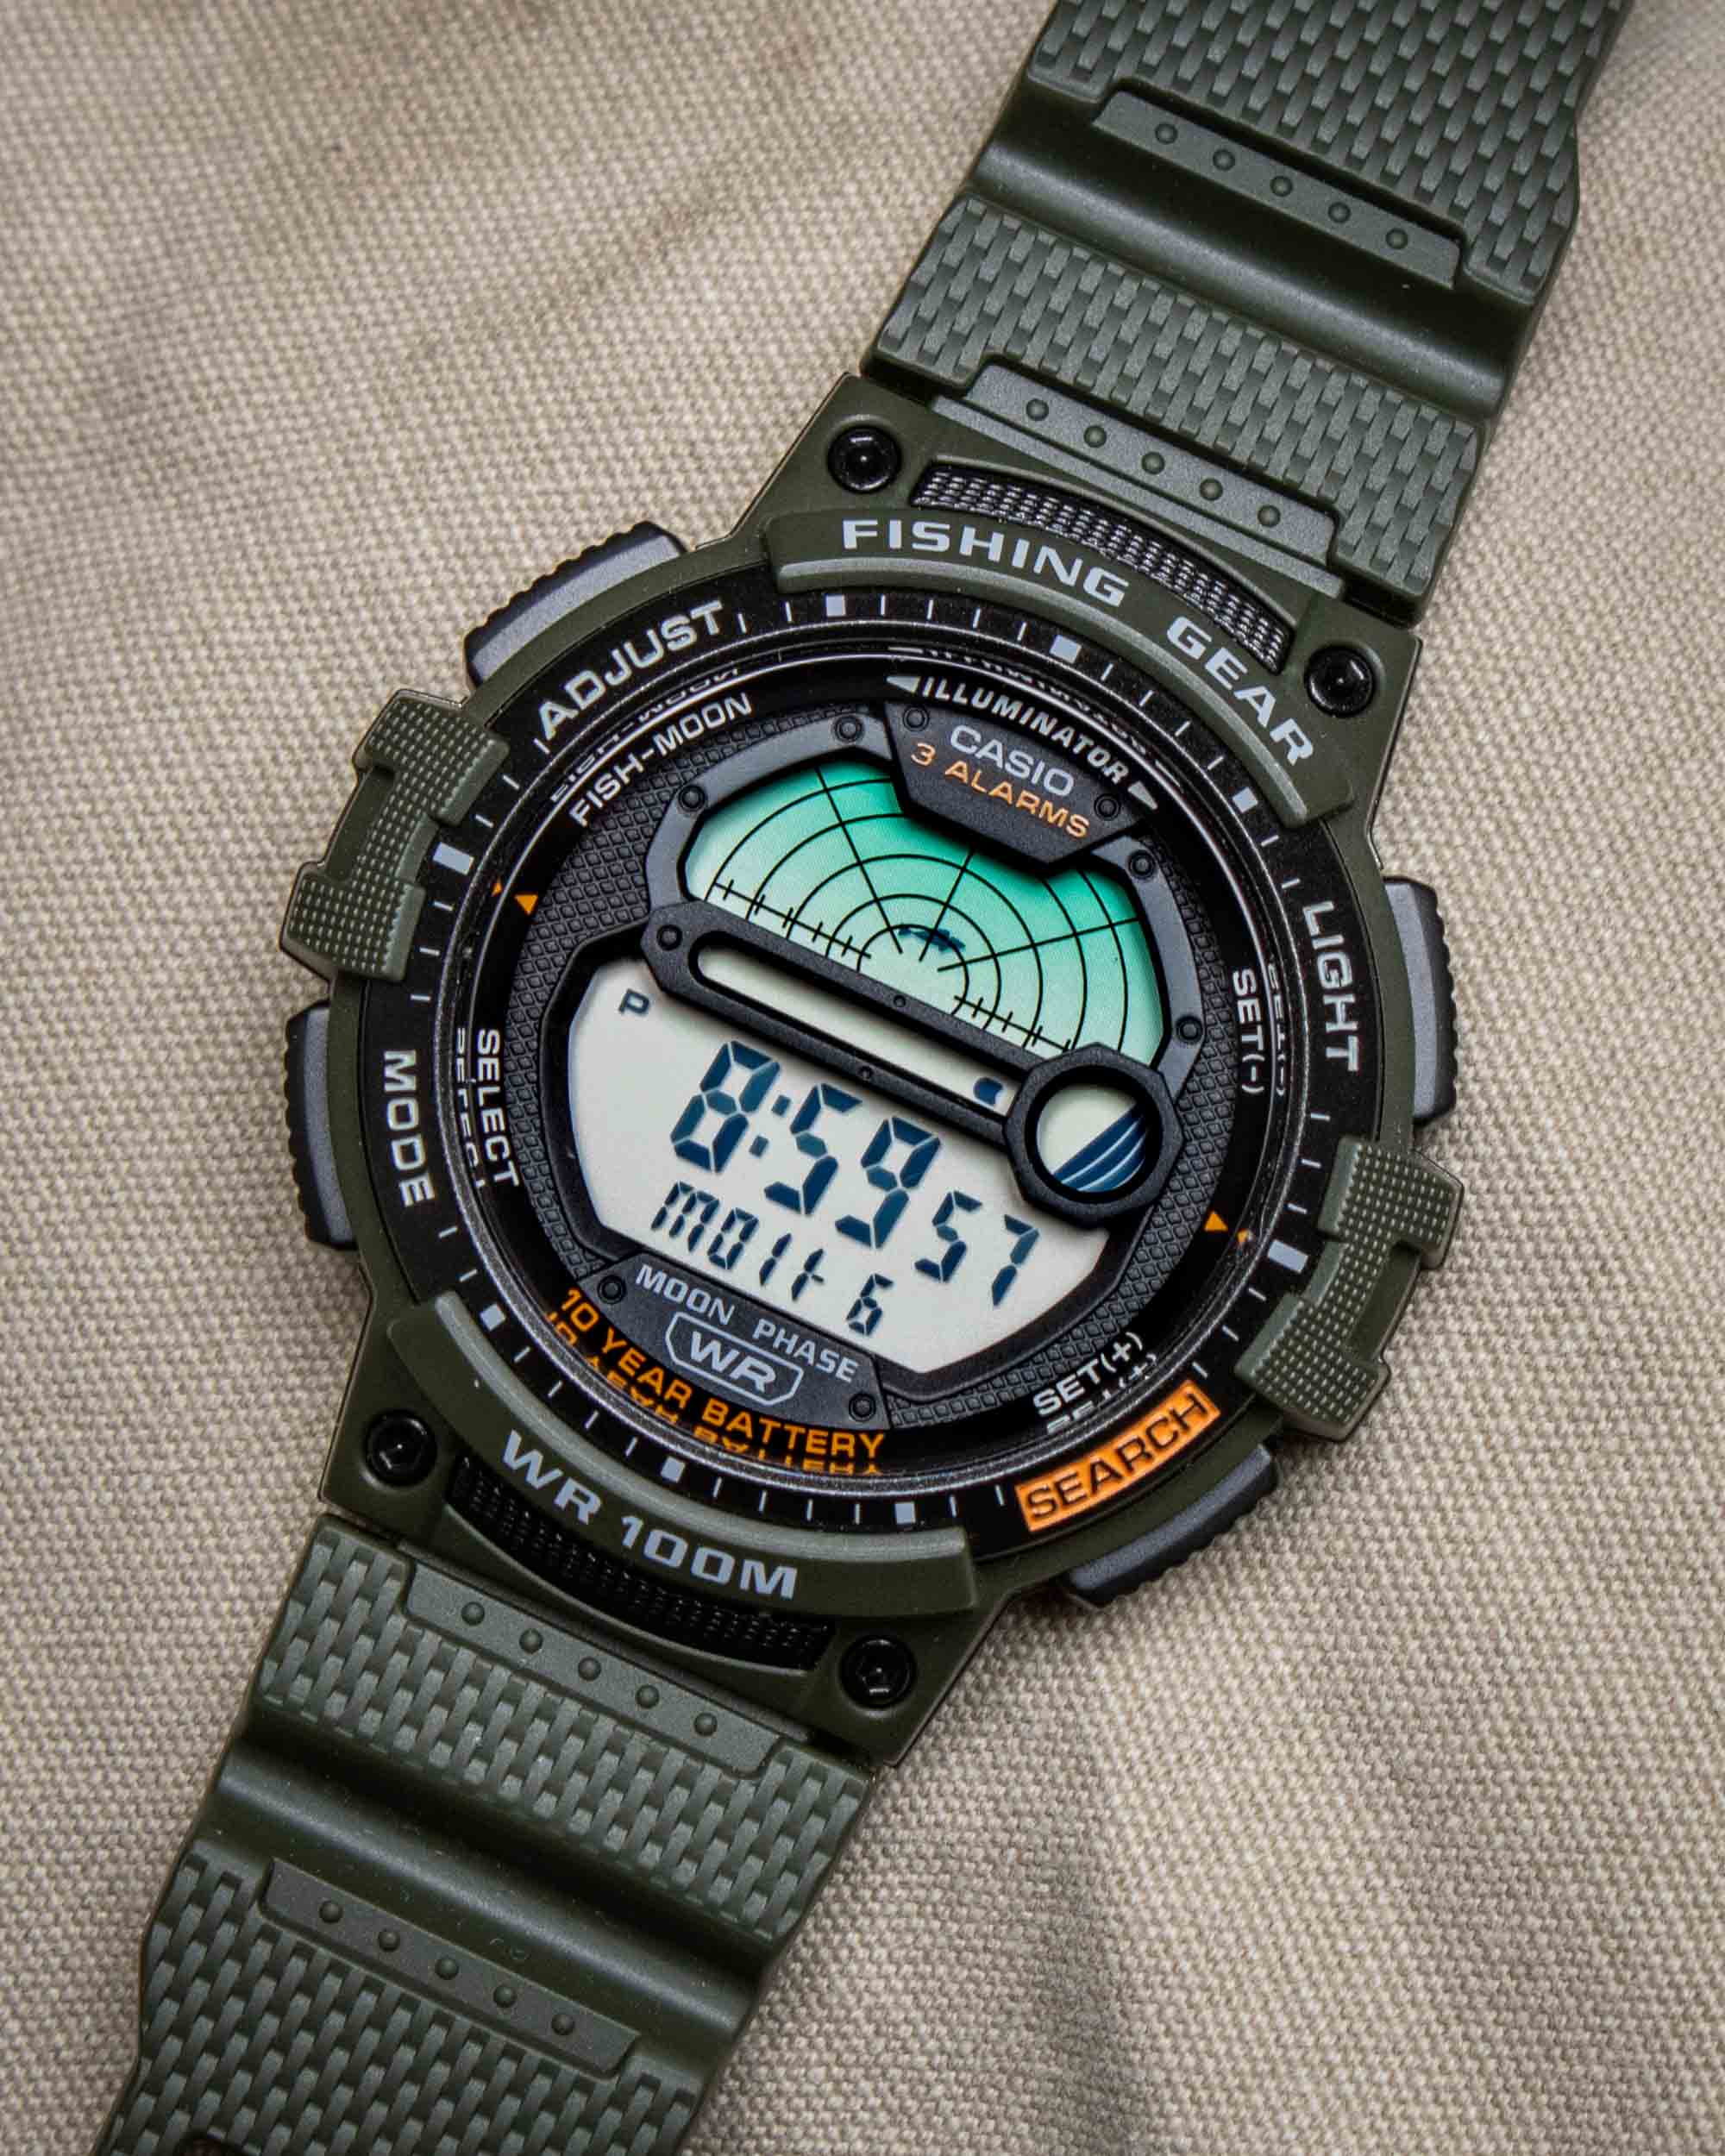 Актуальная цена 30$: Часы Casio Fishing Gear WS1200H